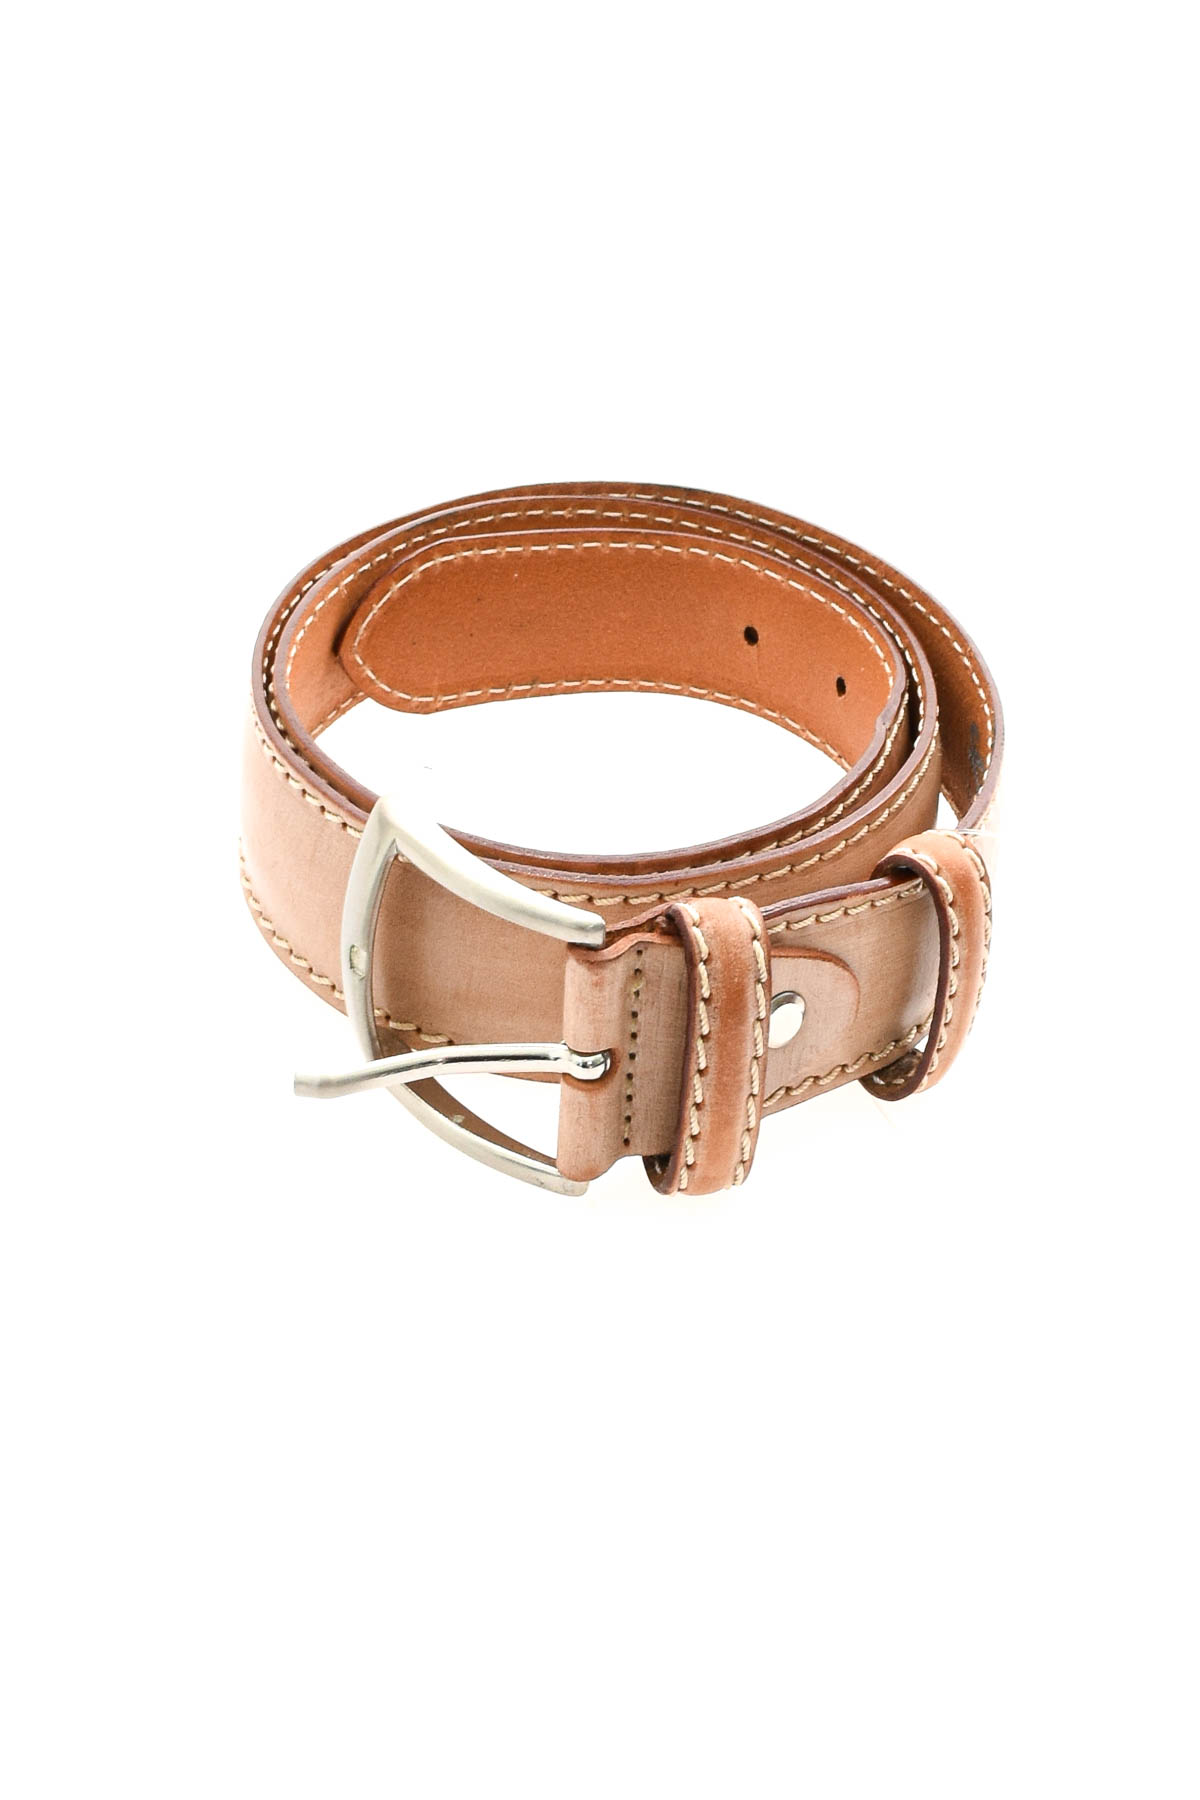 Ladies's belt - SCHUCHARD & FRIESE - 0